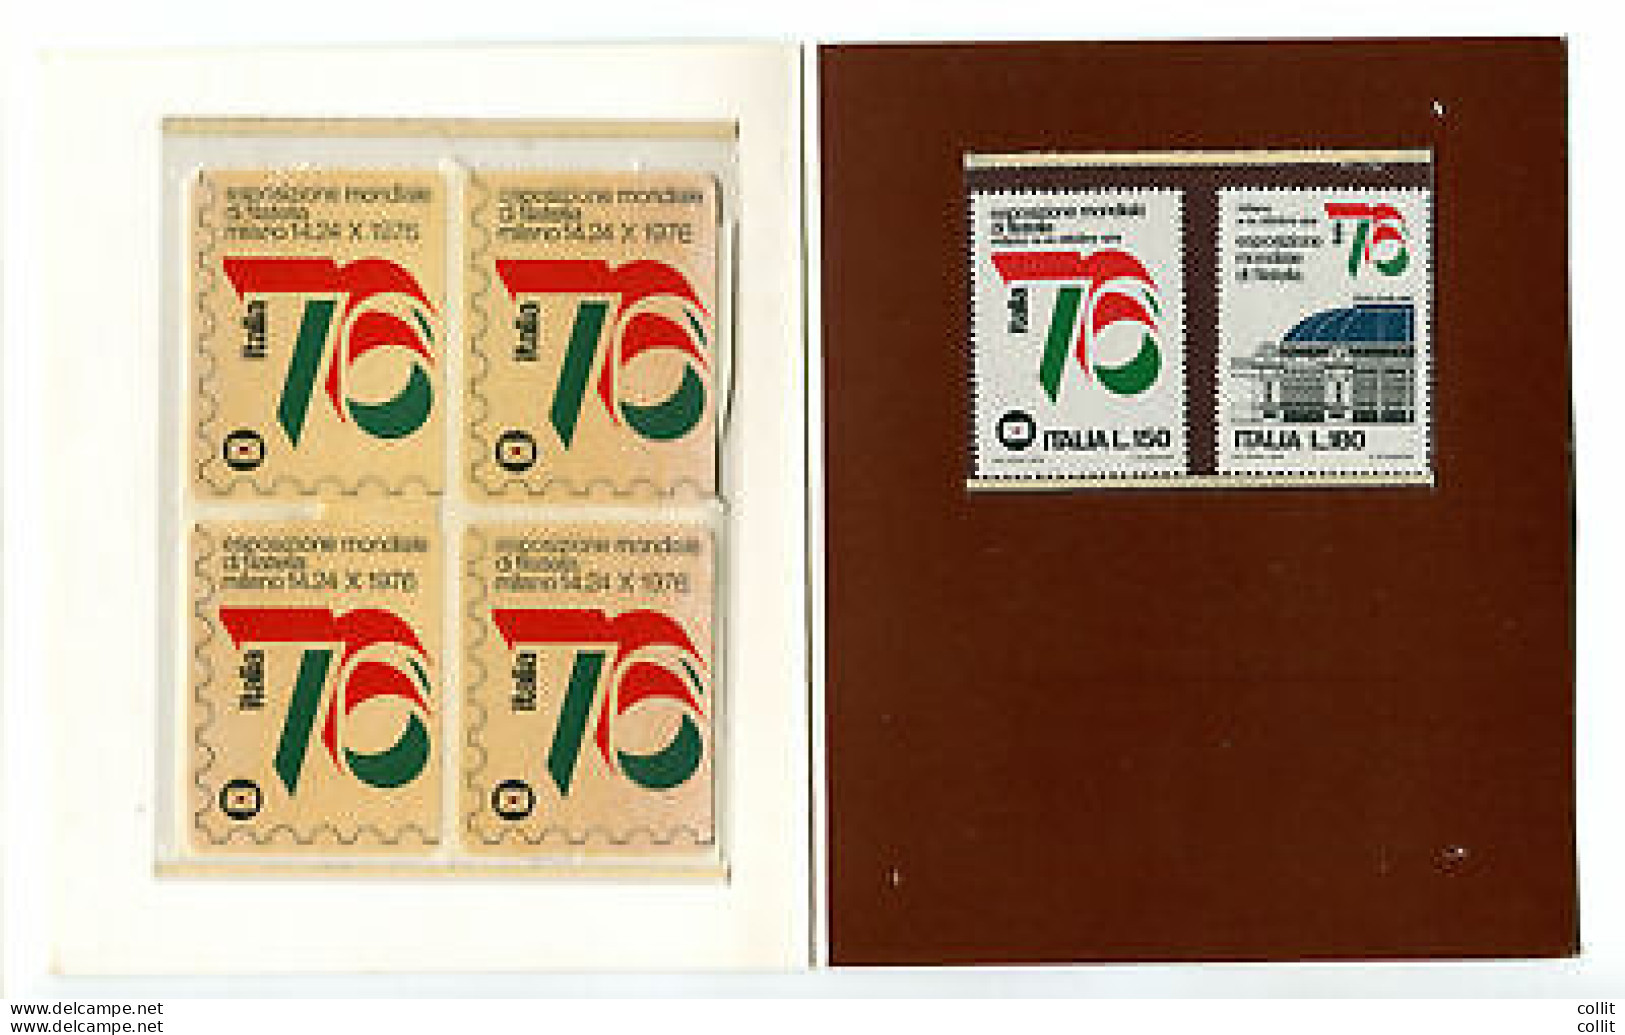 Precursore 1976 - Folder Dedicato Ala Manifestazione Italia '76 - Paquetes De Presentación